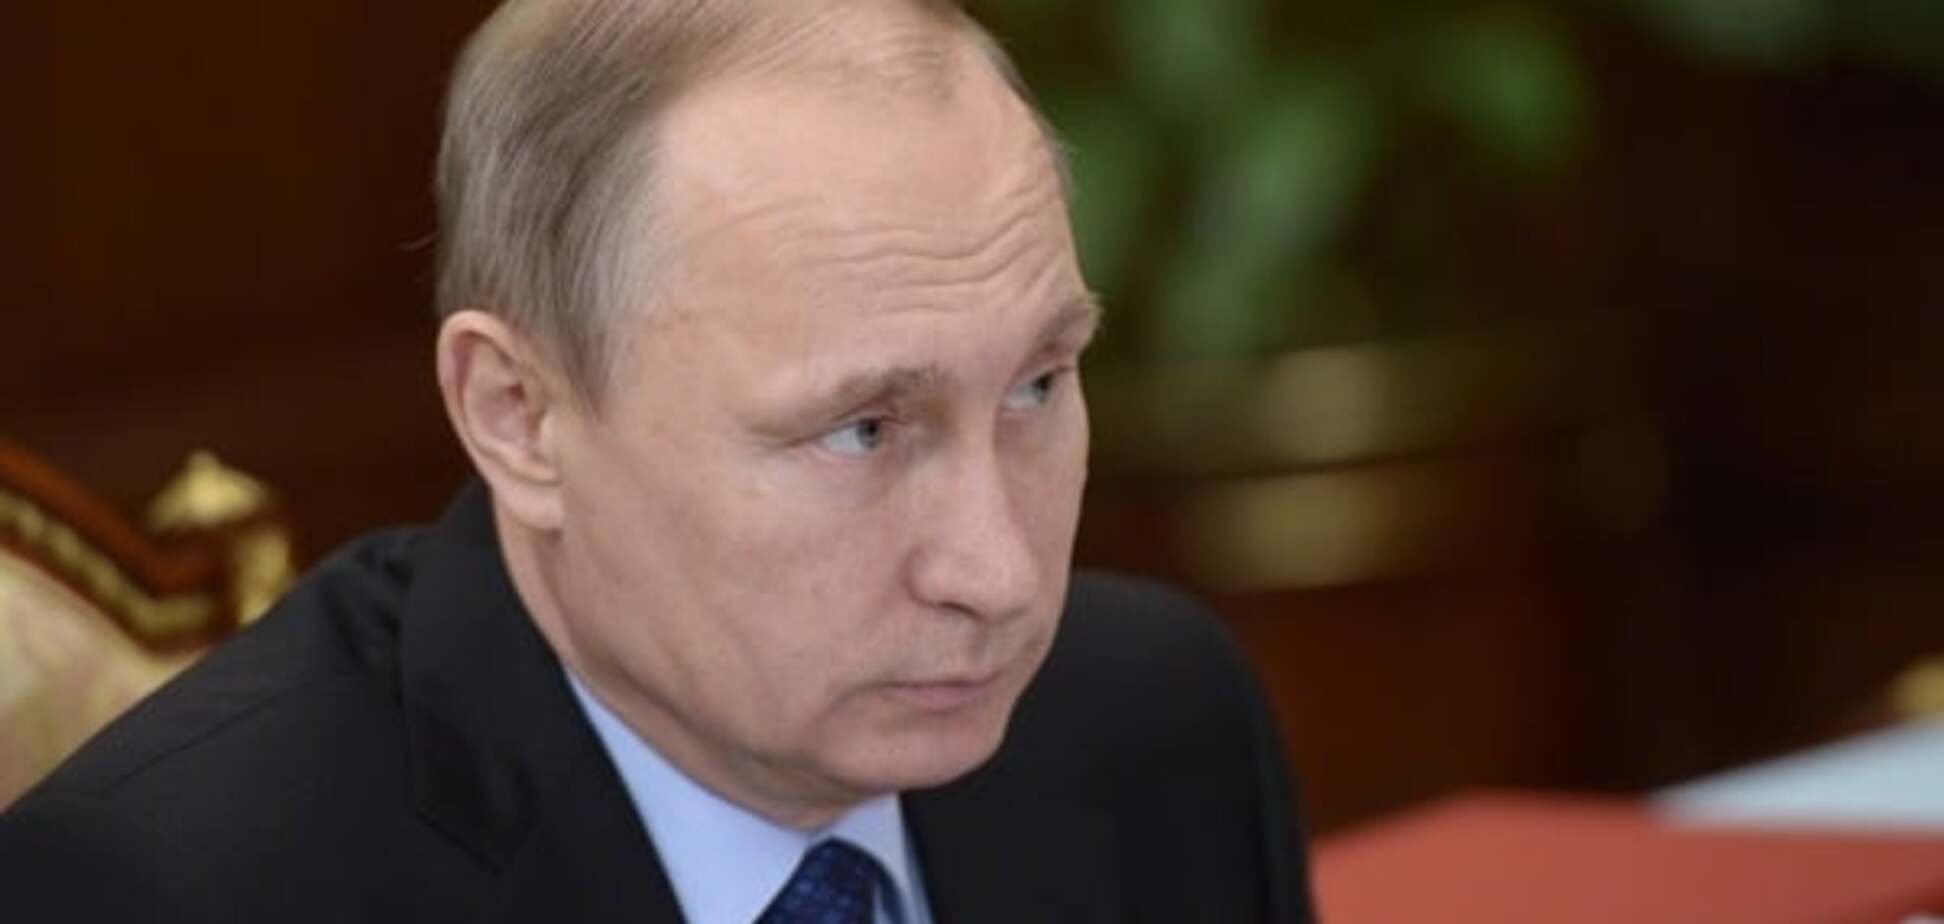 Скоро умрет: врач заявила, что у Путина - рак простаты